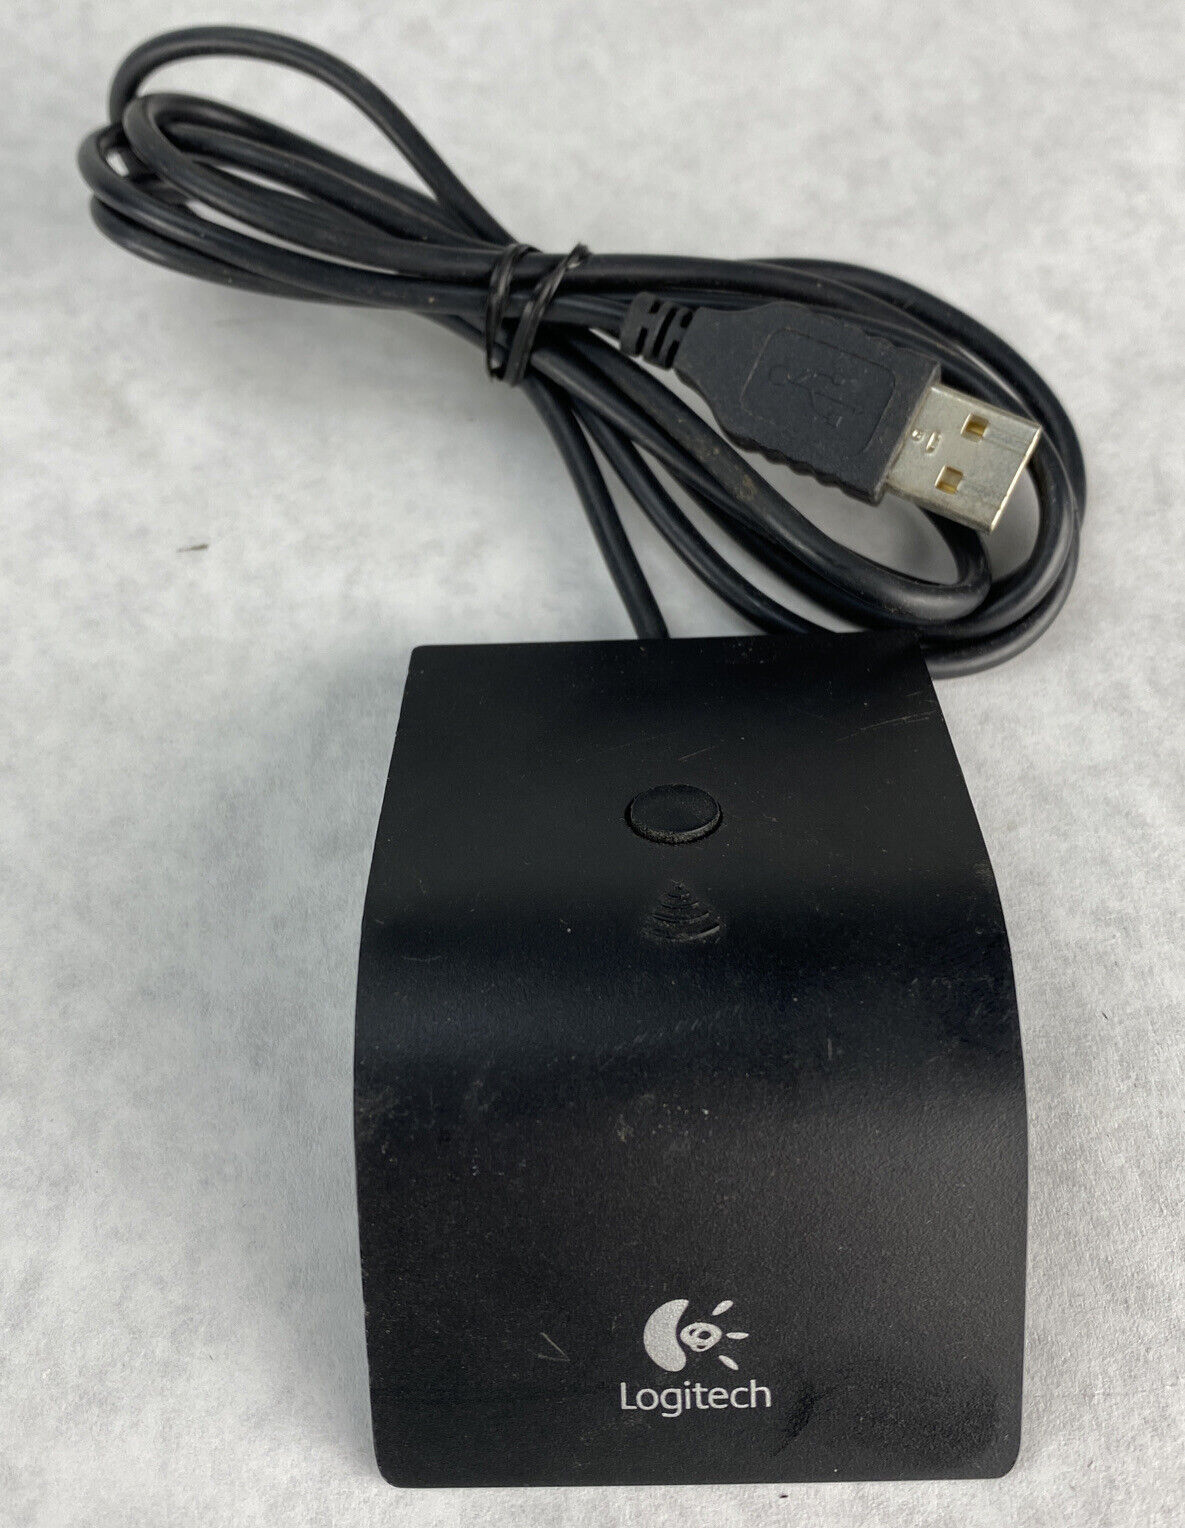 boliger vinkel prins Logitech 831675-0000 C-BT44 USB Wireless Keyboard Mouse Receiver